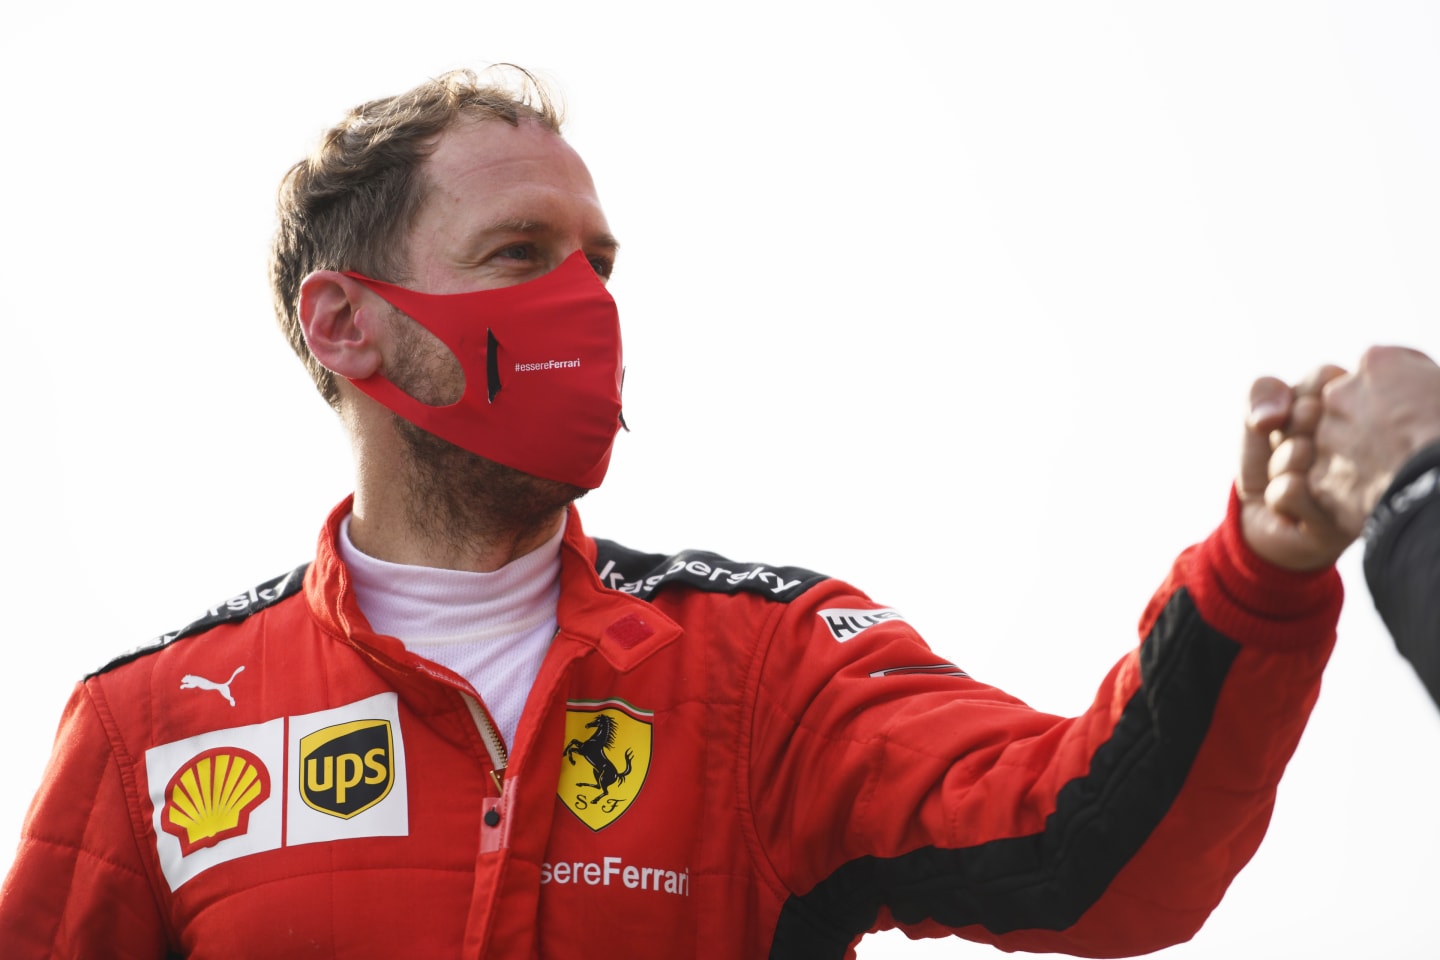 IMOLA, ITALY - NOVEMBER 01: Sebastian Vettel of Germany and Ferrari looks on in parc ferme during